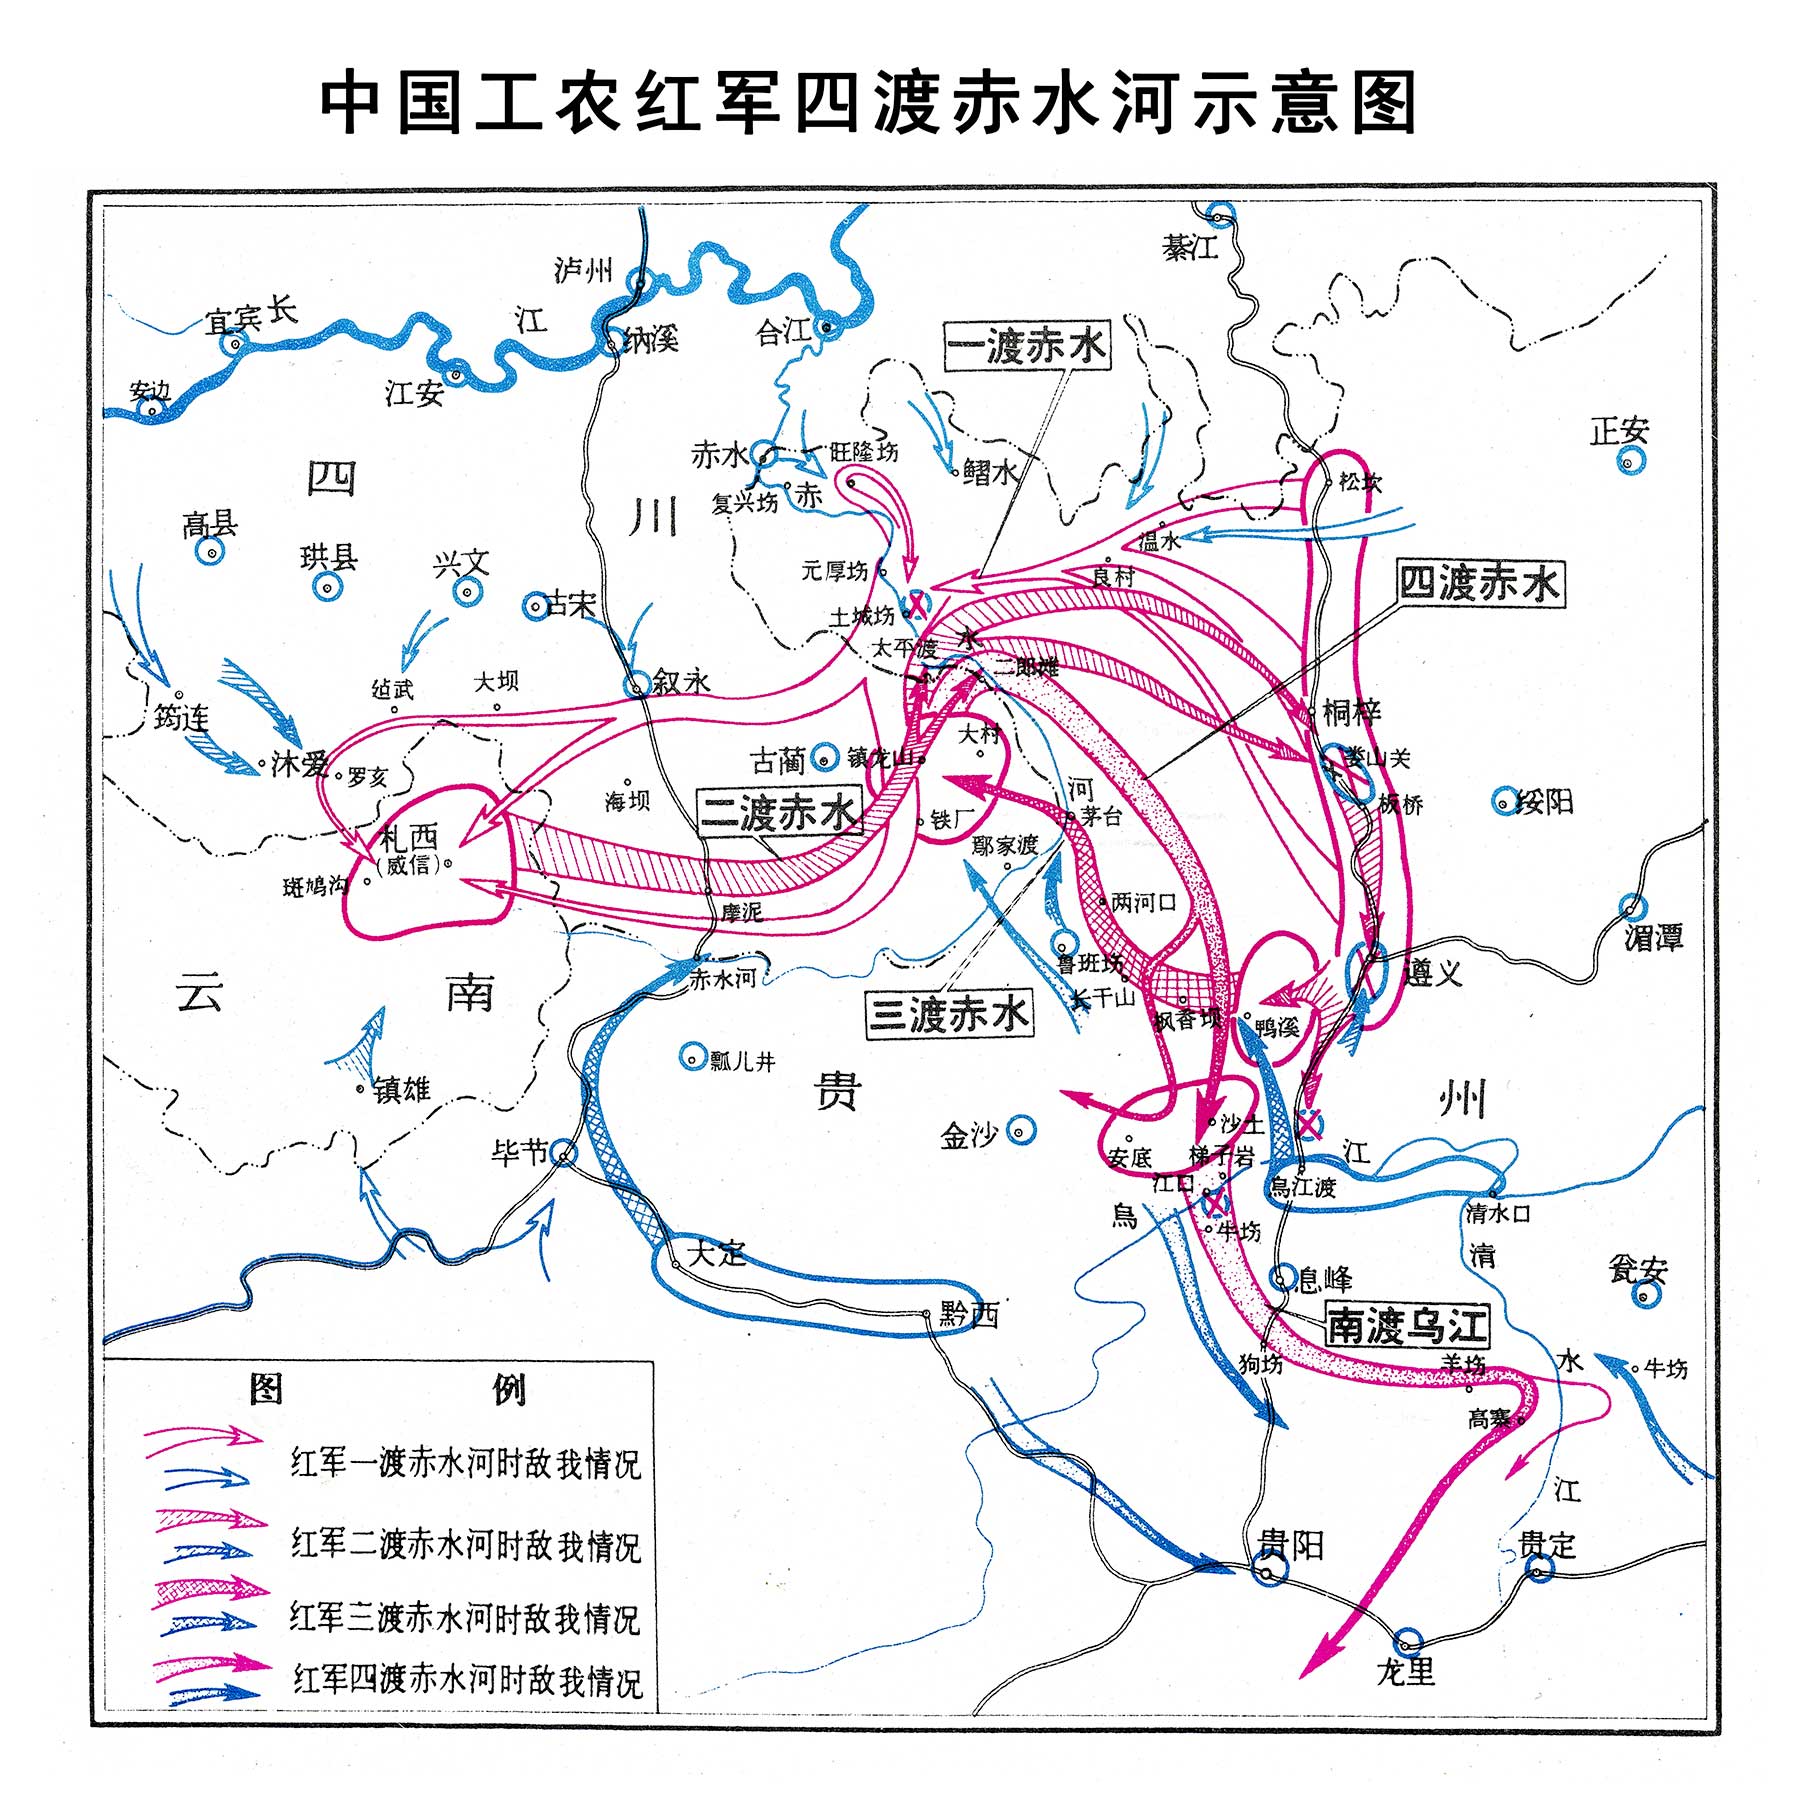 10中国工农红军第一方面军四渡赤水河示意图.jpg